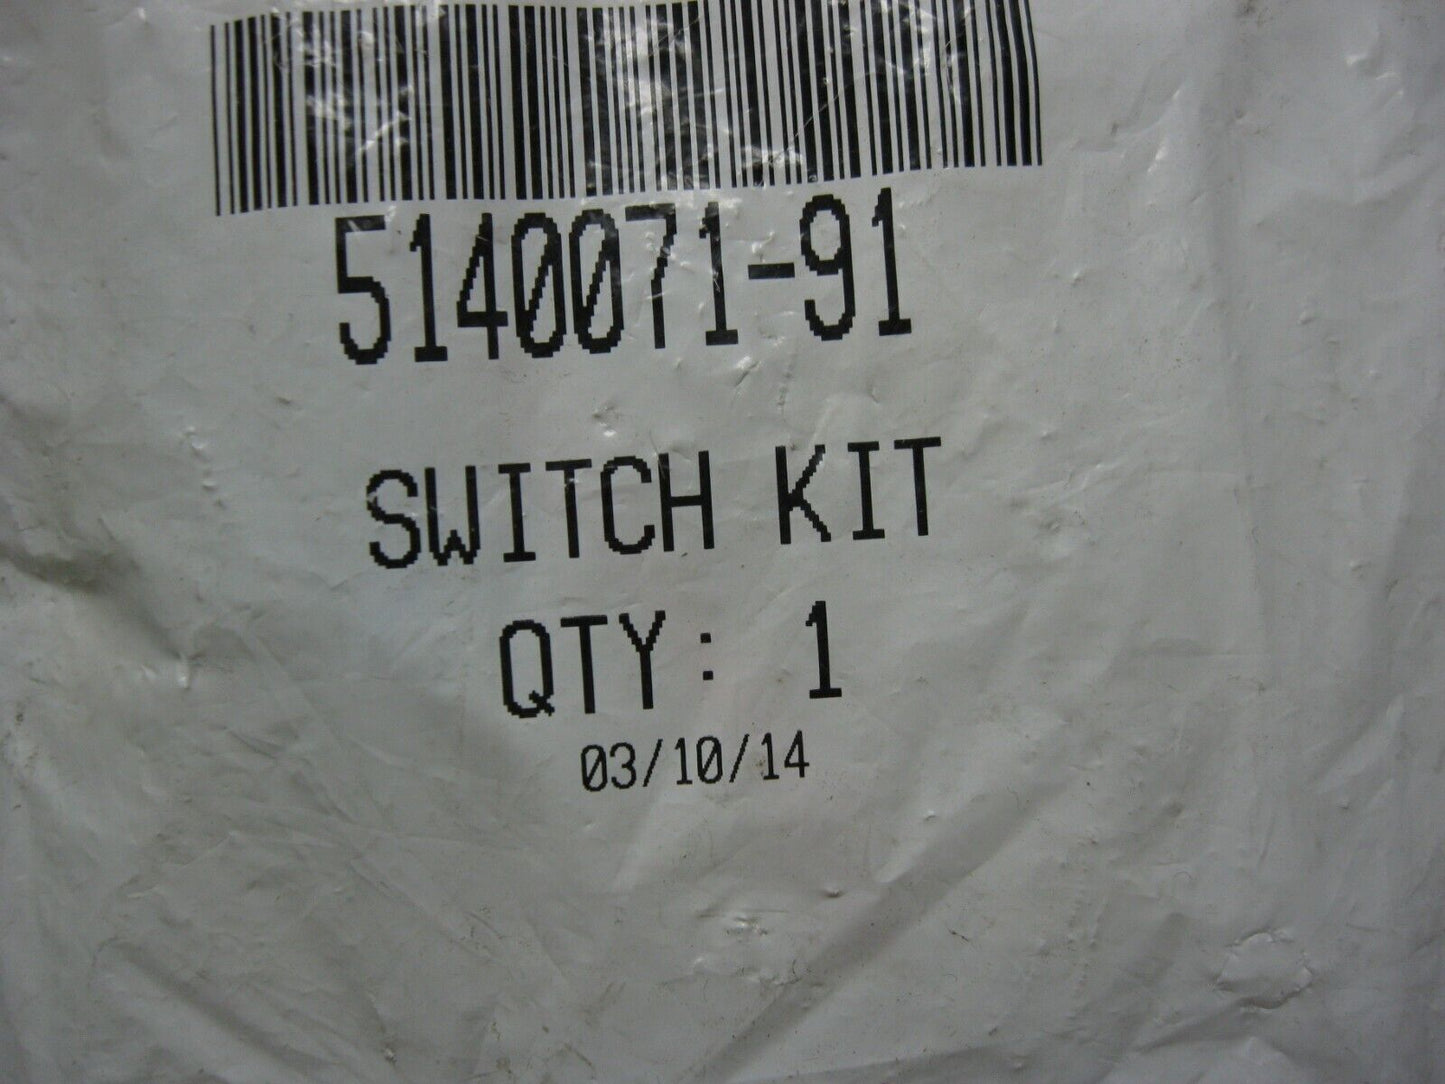 DeWALT OEM Polisher Switch Kit w Instructions  5140071-91